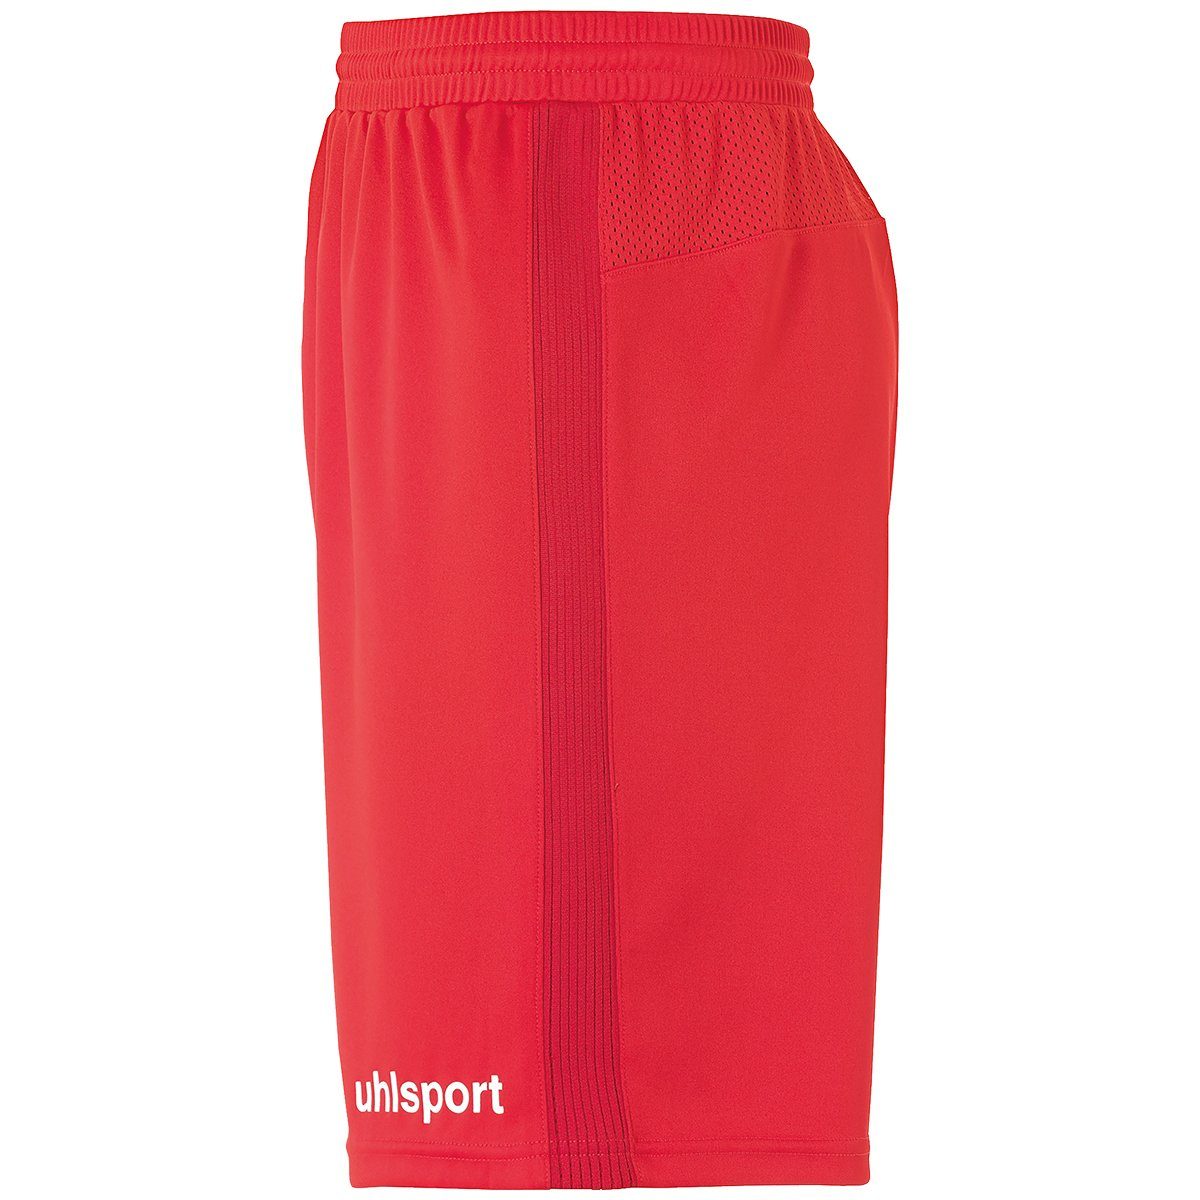 SHORTS rot/weiß uhlsport PERFORMANCE Shorts uhlsport Shorts